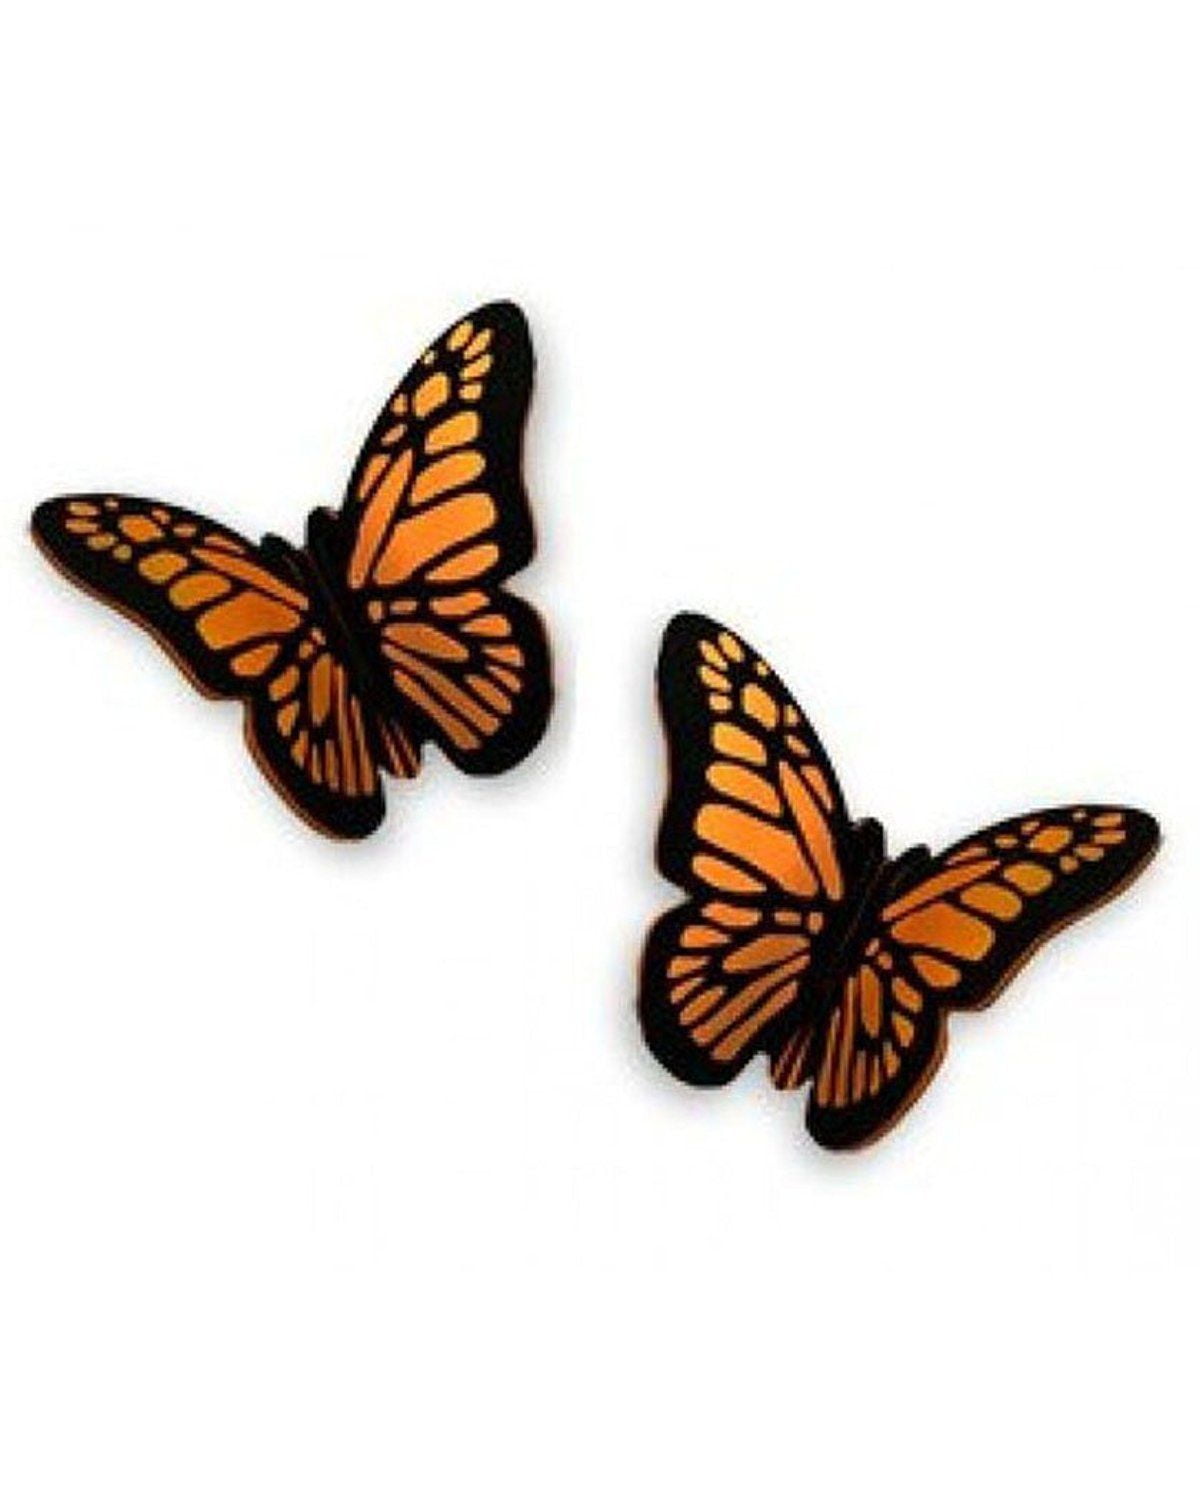 Monarch Butterfly Earrings | Cloisonne Jewelry | Wire Earrings